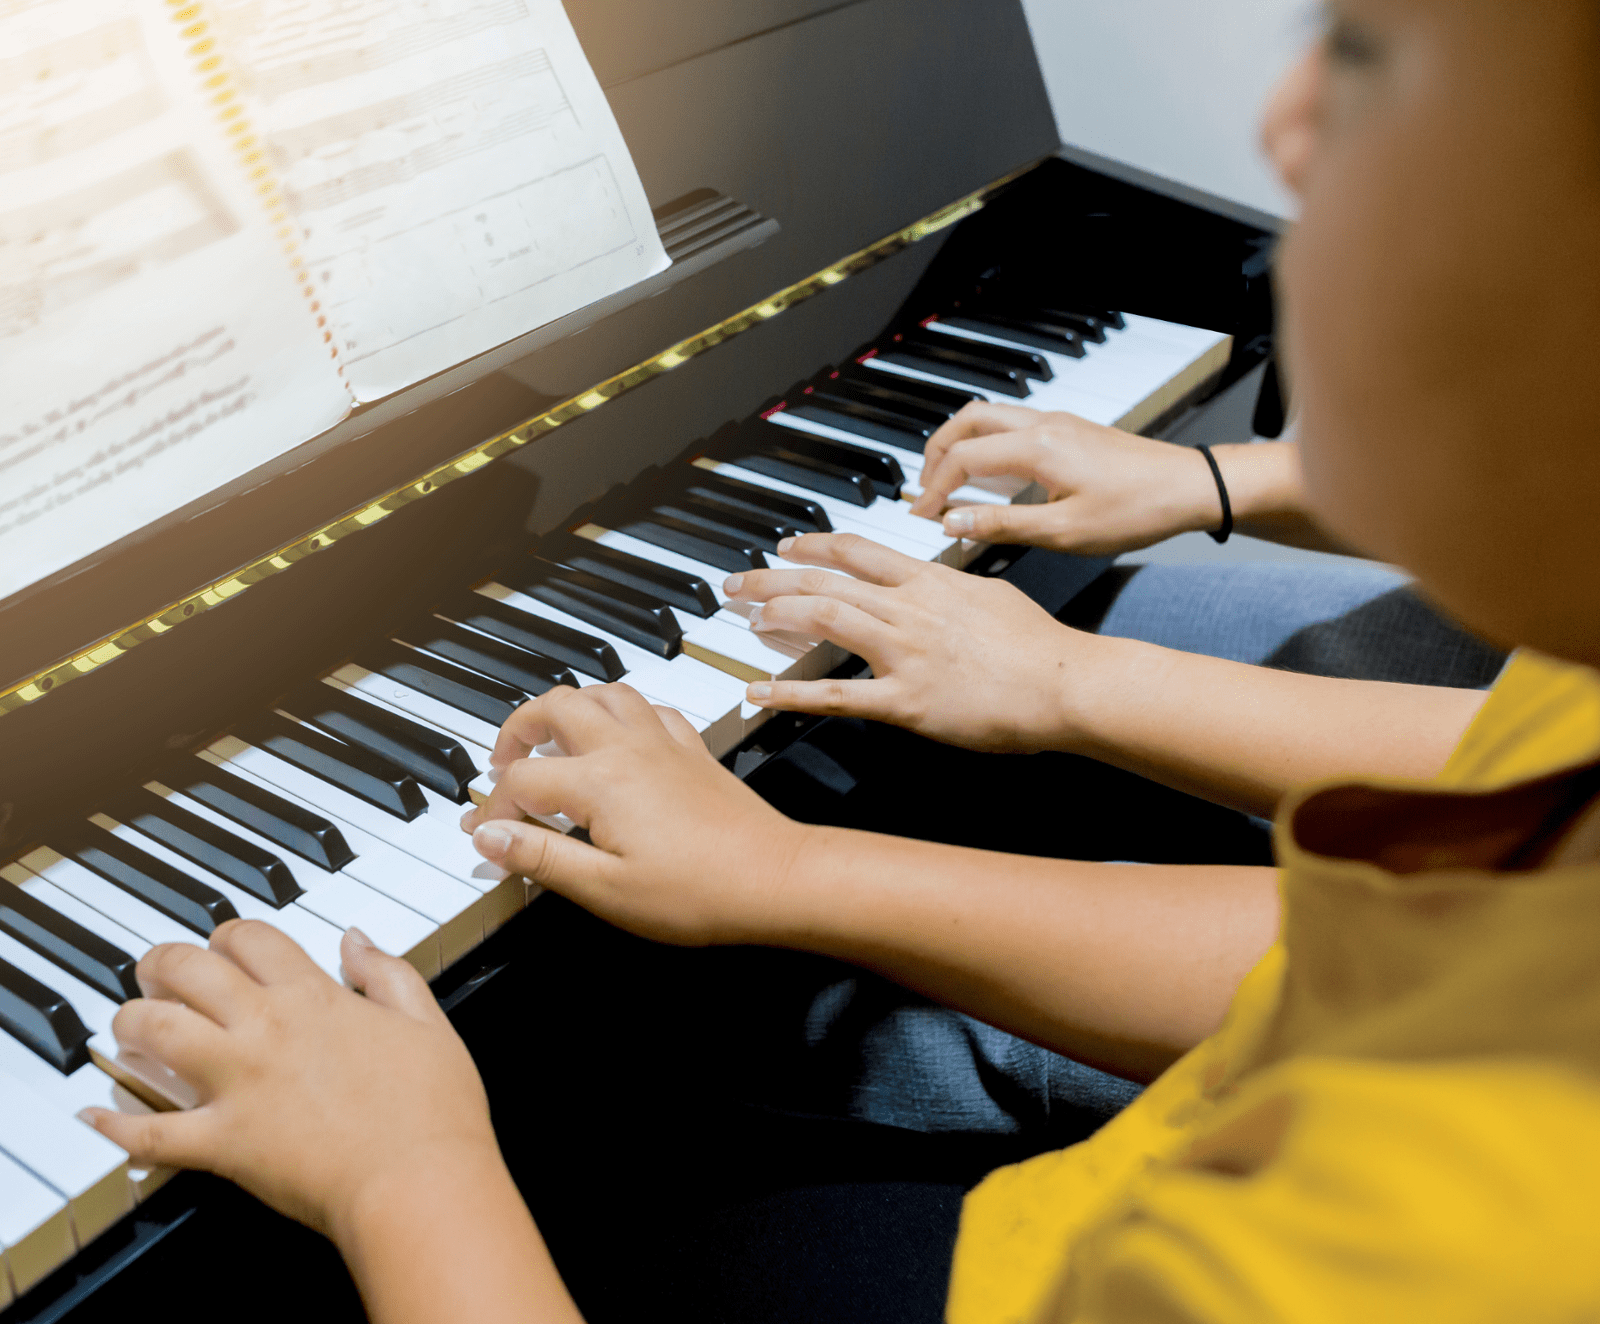 Piano lessons at Serenata Music Studio in Chester, NJ